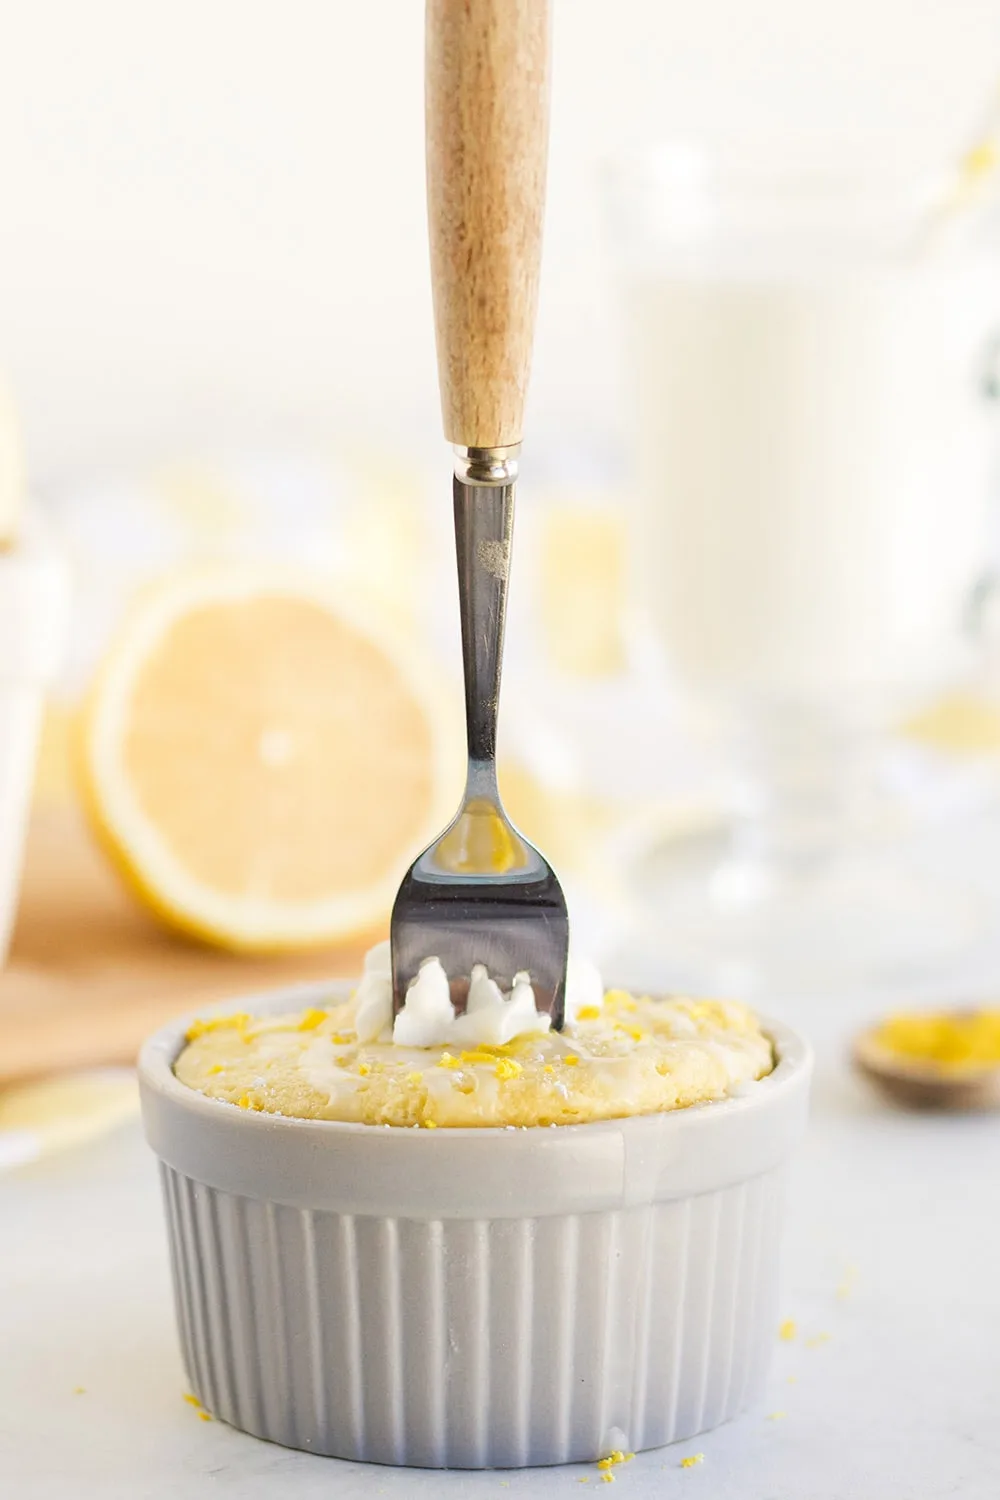 Fork stuck in a lemon cake in a grey ramekin.